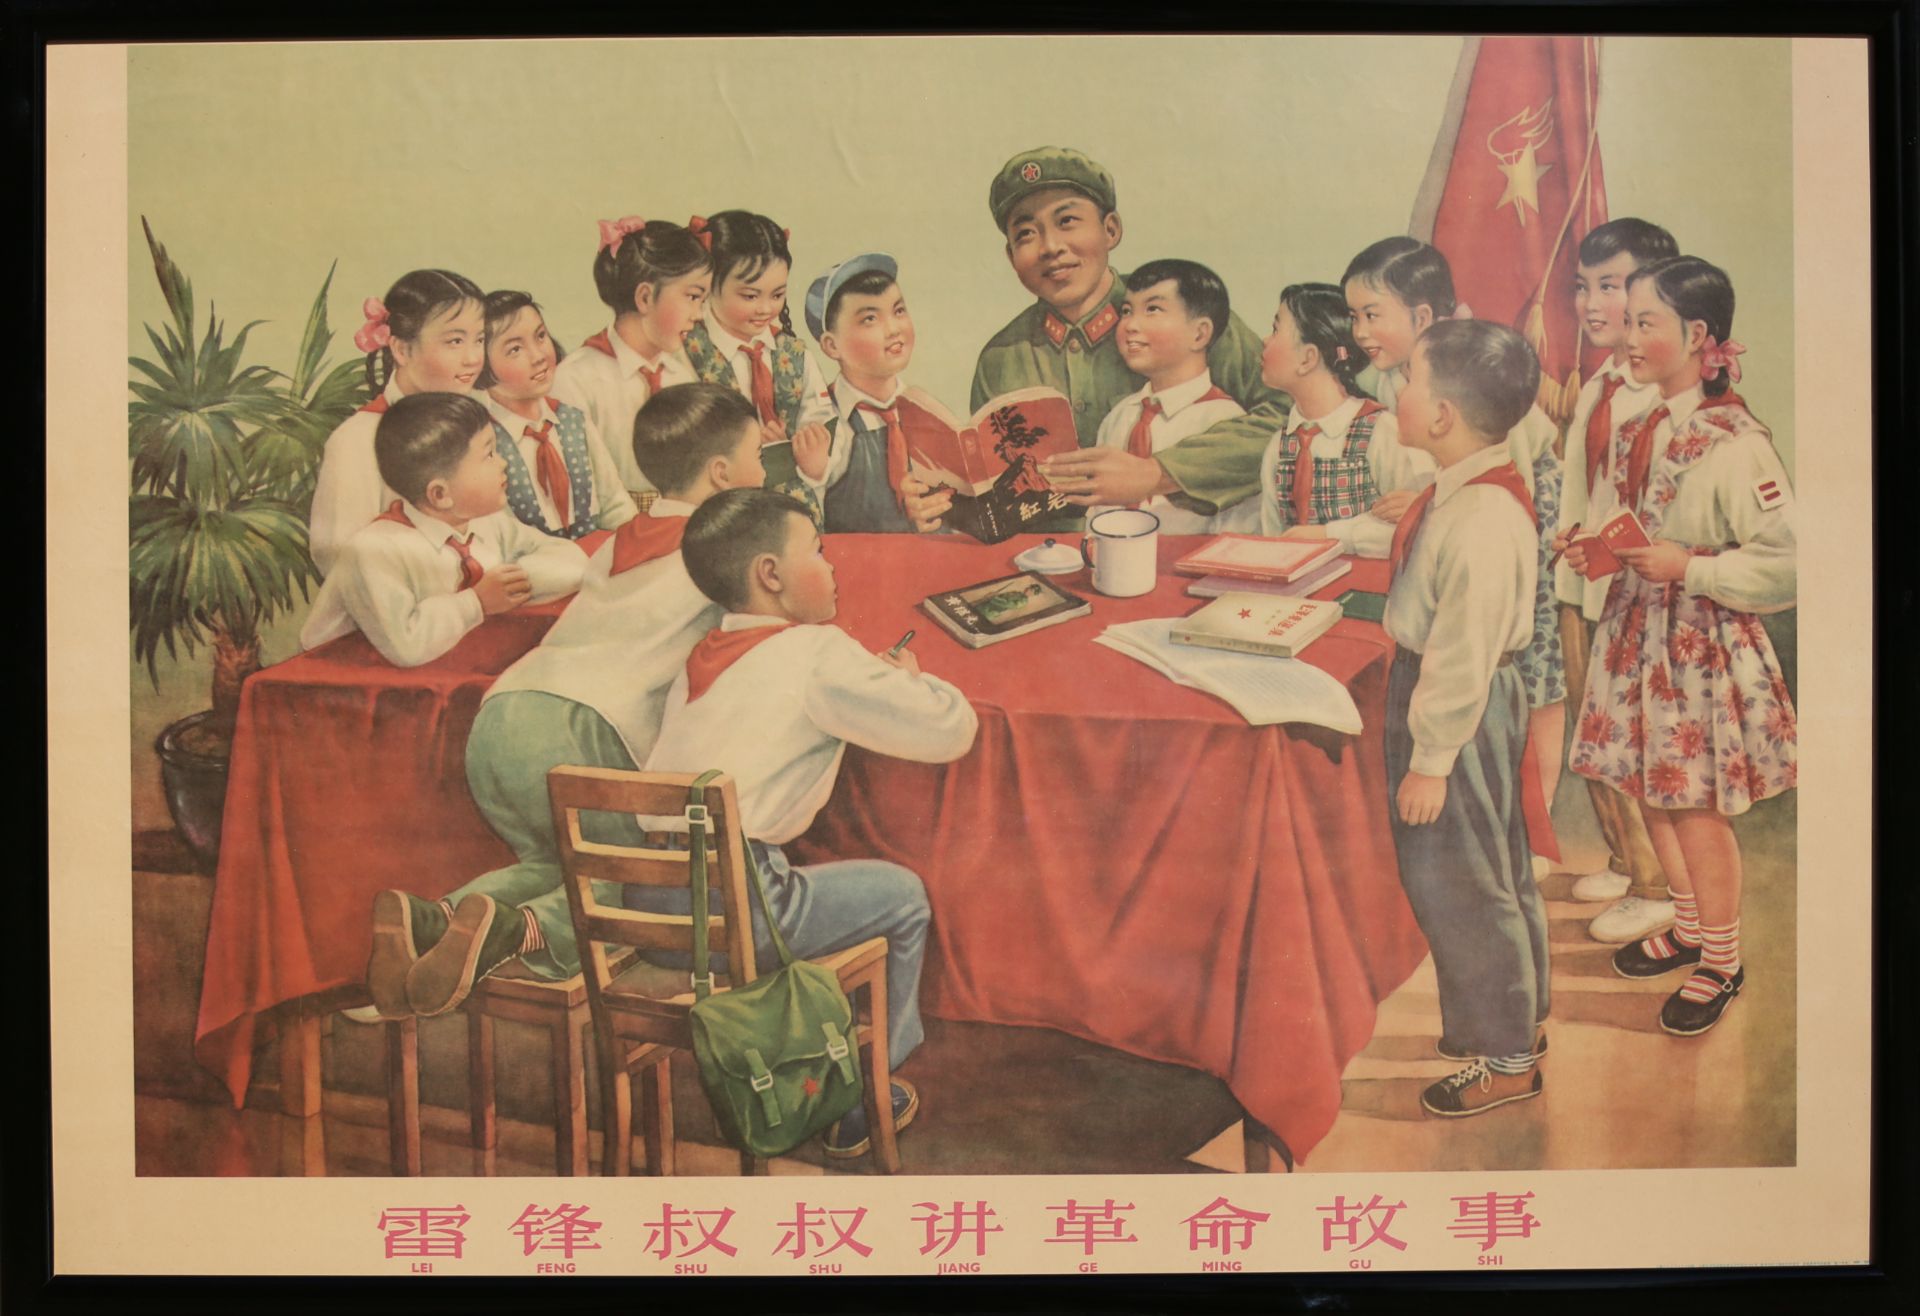 17 Affiches de propagande de la révolution culturelle chinoise Encadrée 75cm x 52cm - Image 6 of 17